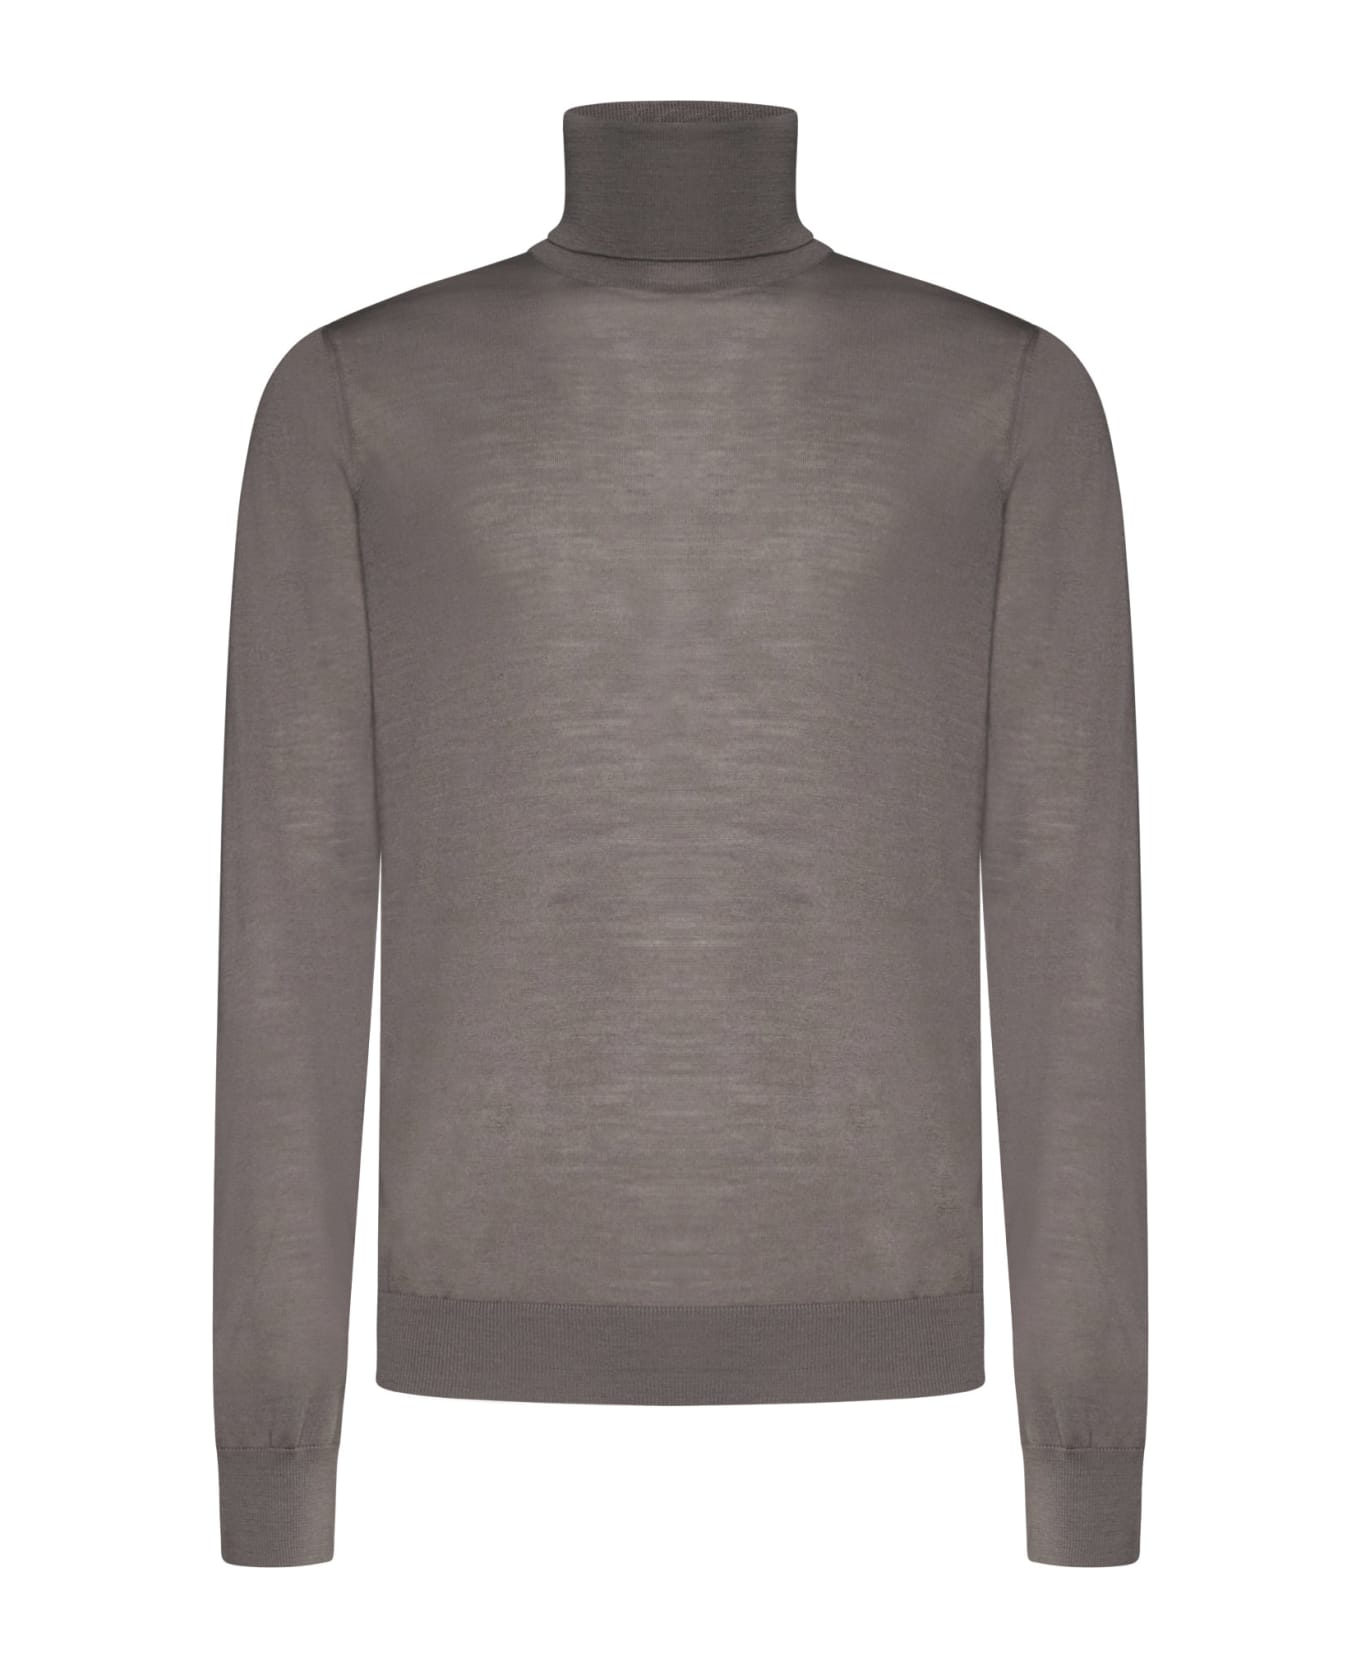 Piacenza Cashmere Sweater - Stone ニットウェア